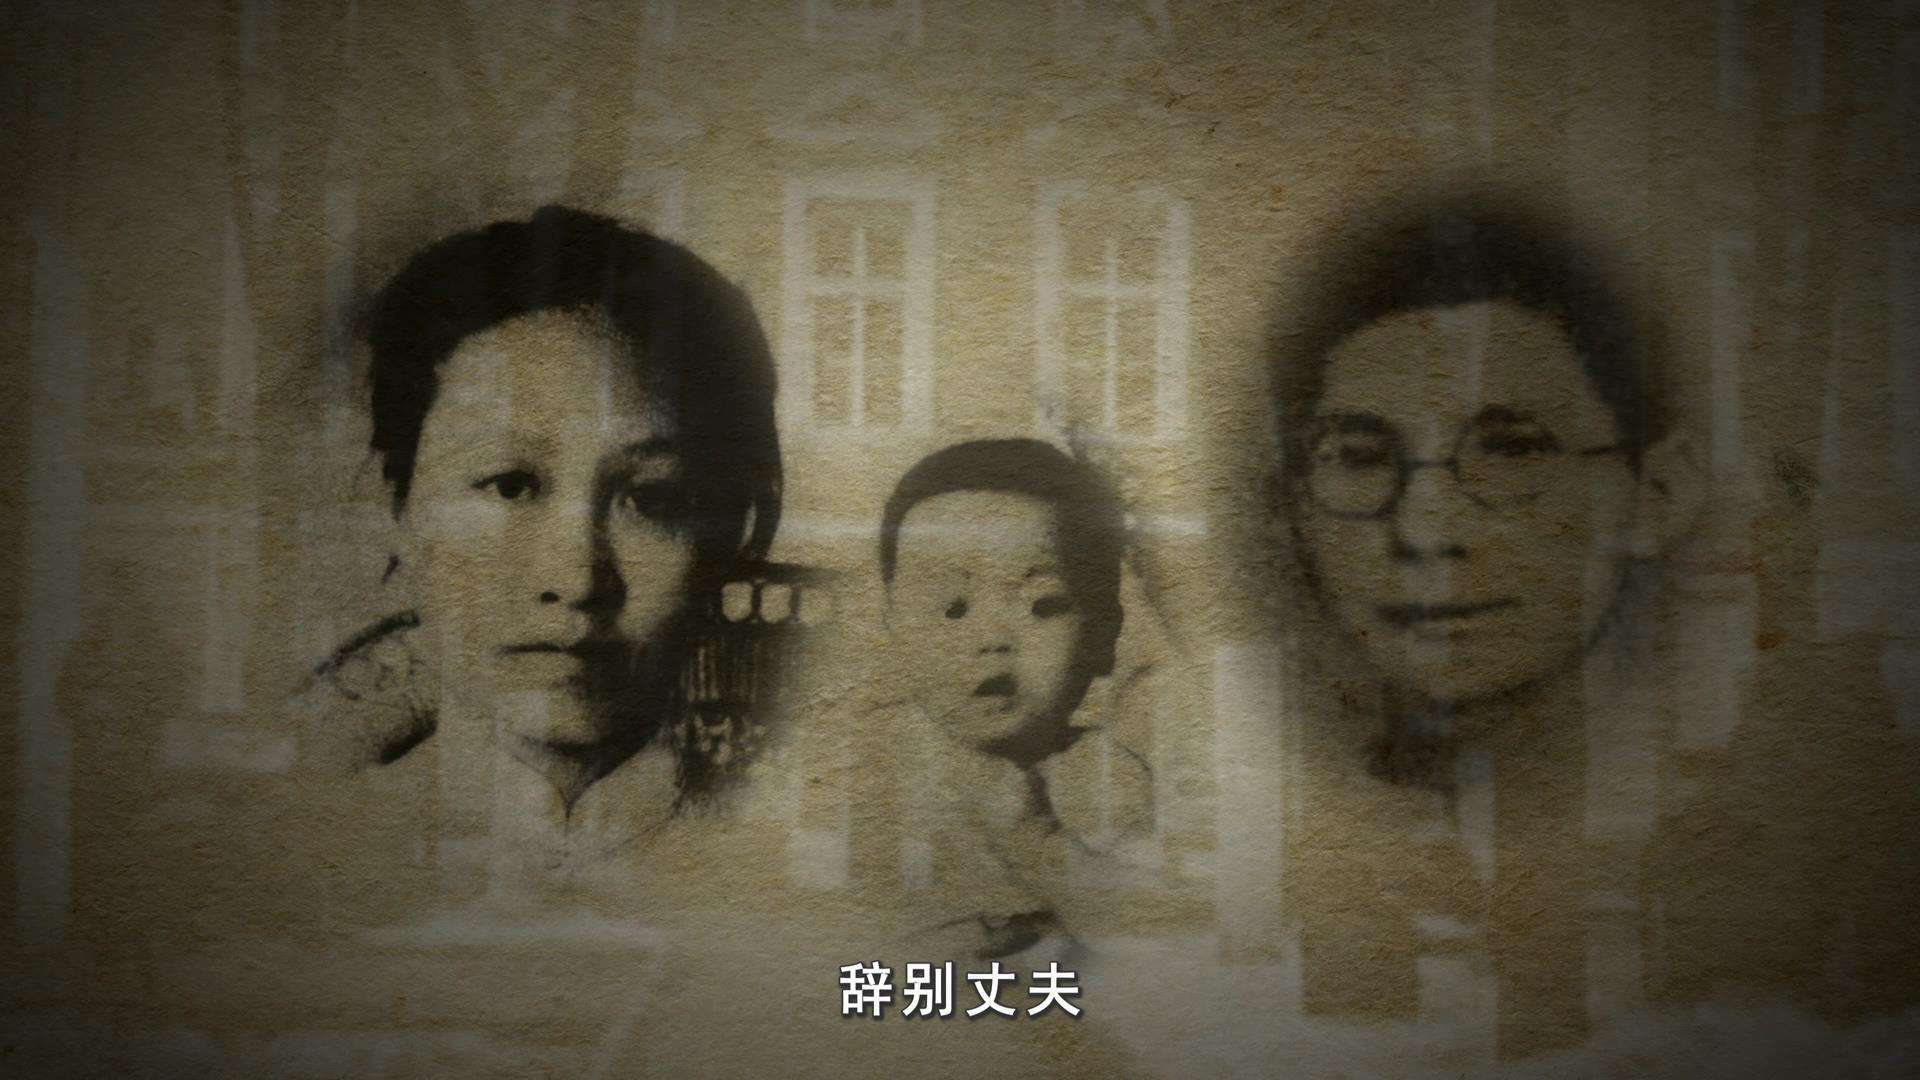 抗日英雄赵一曼牺牲后,儿子陈掖贤曾担任大学教师,后却自缢身亡